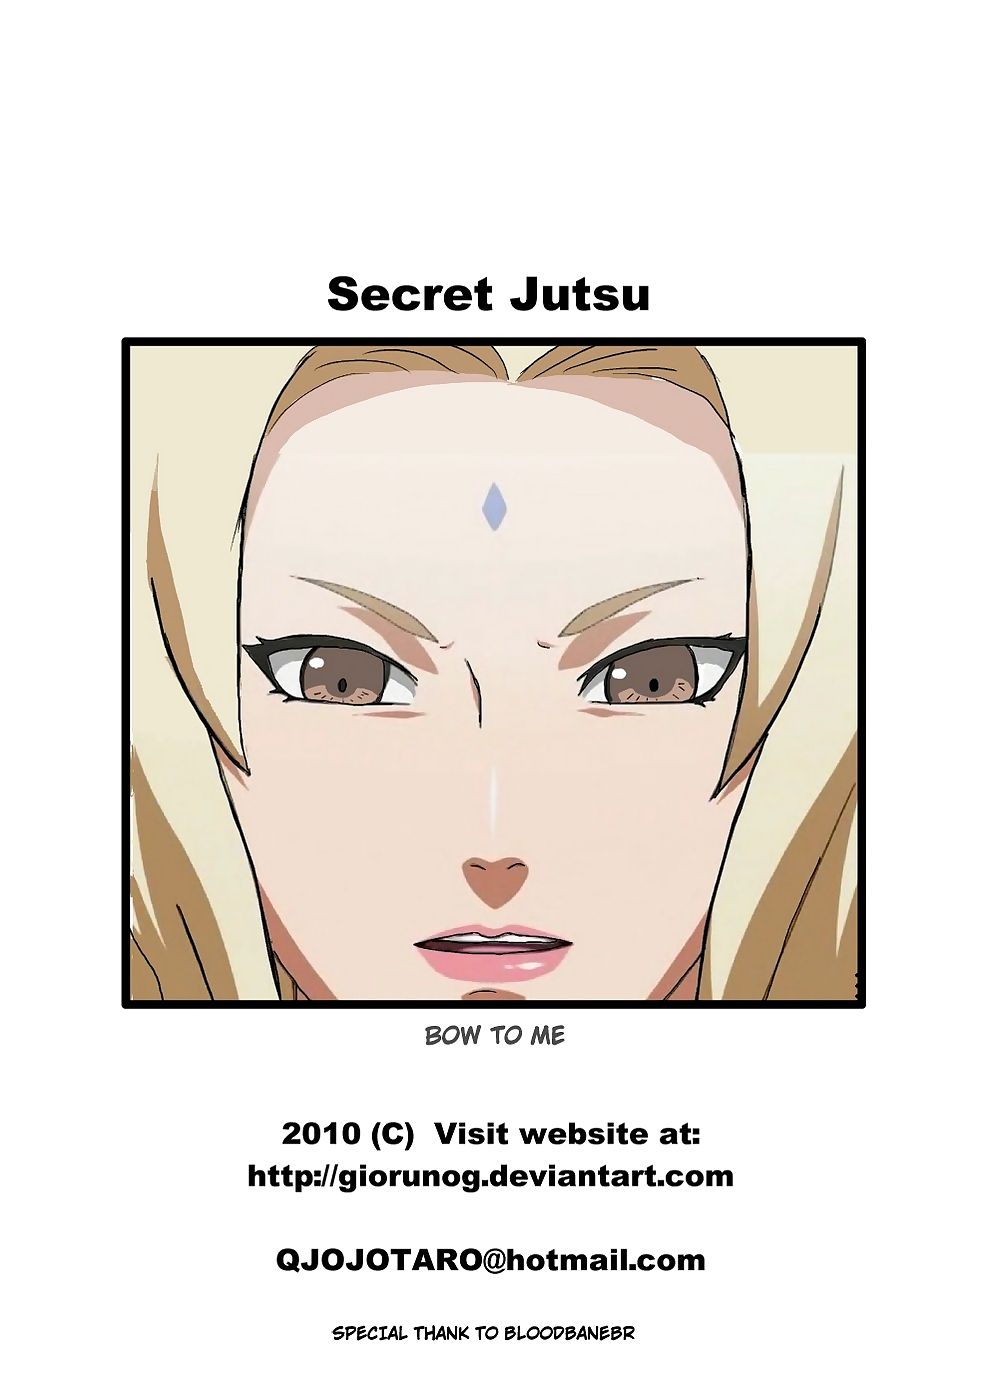 Naruto Sekret jutsu